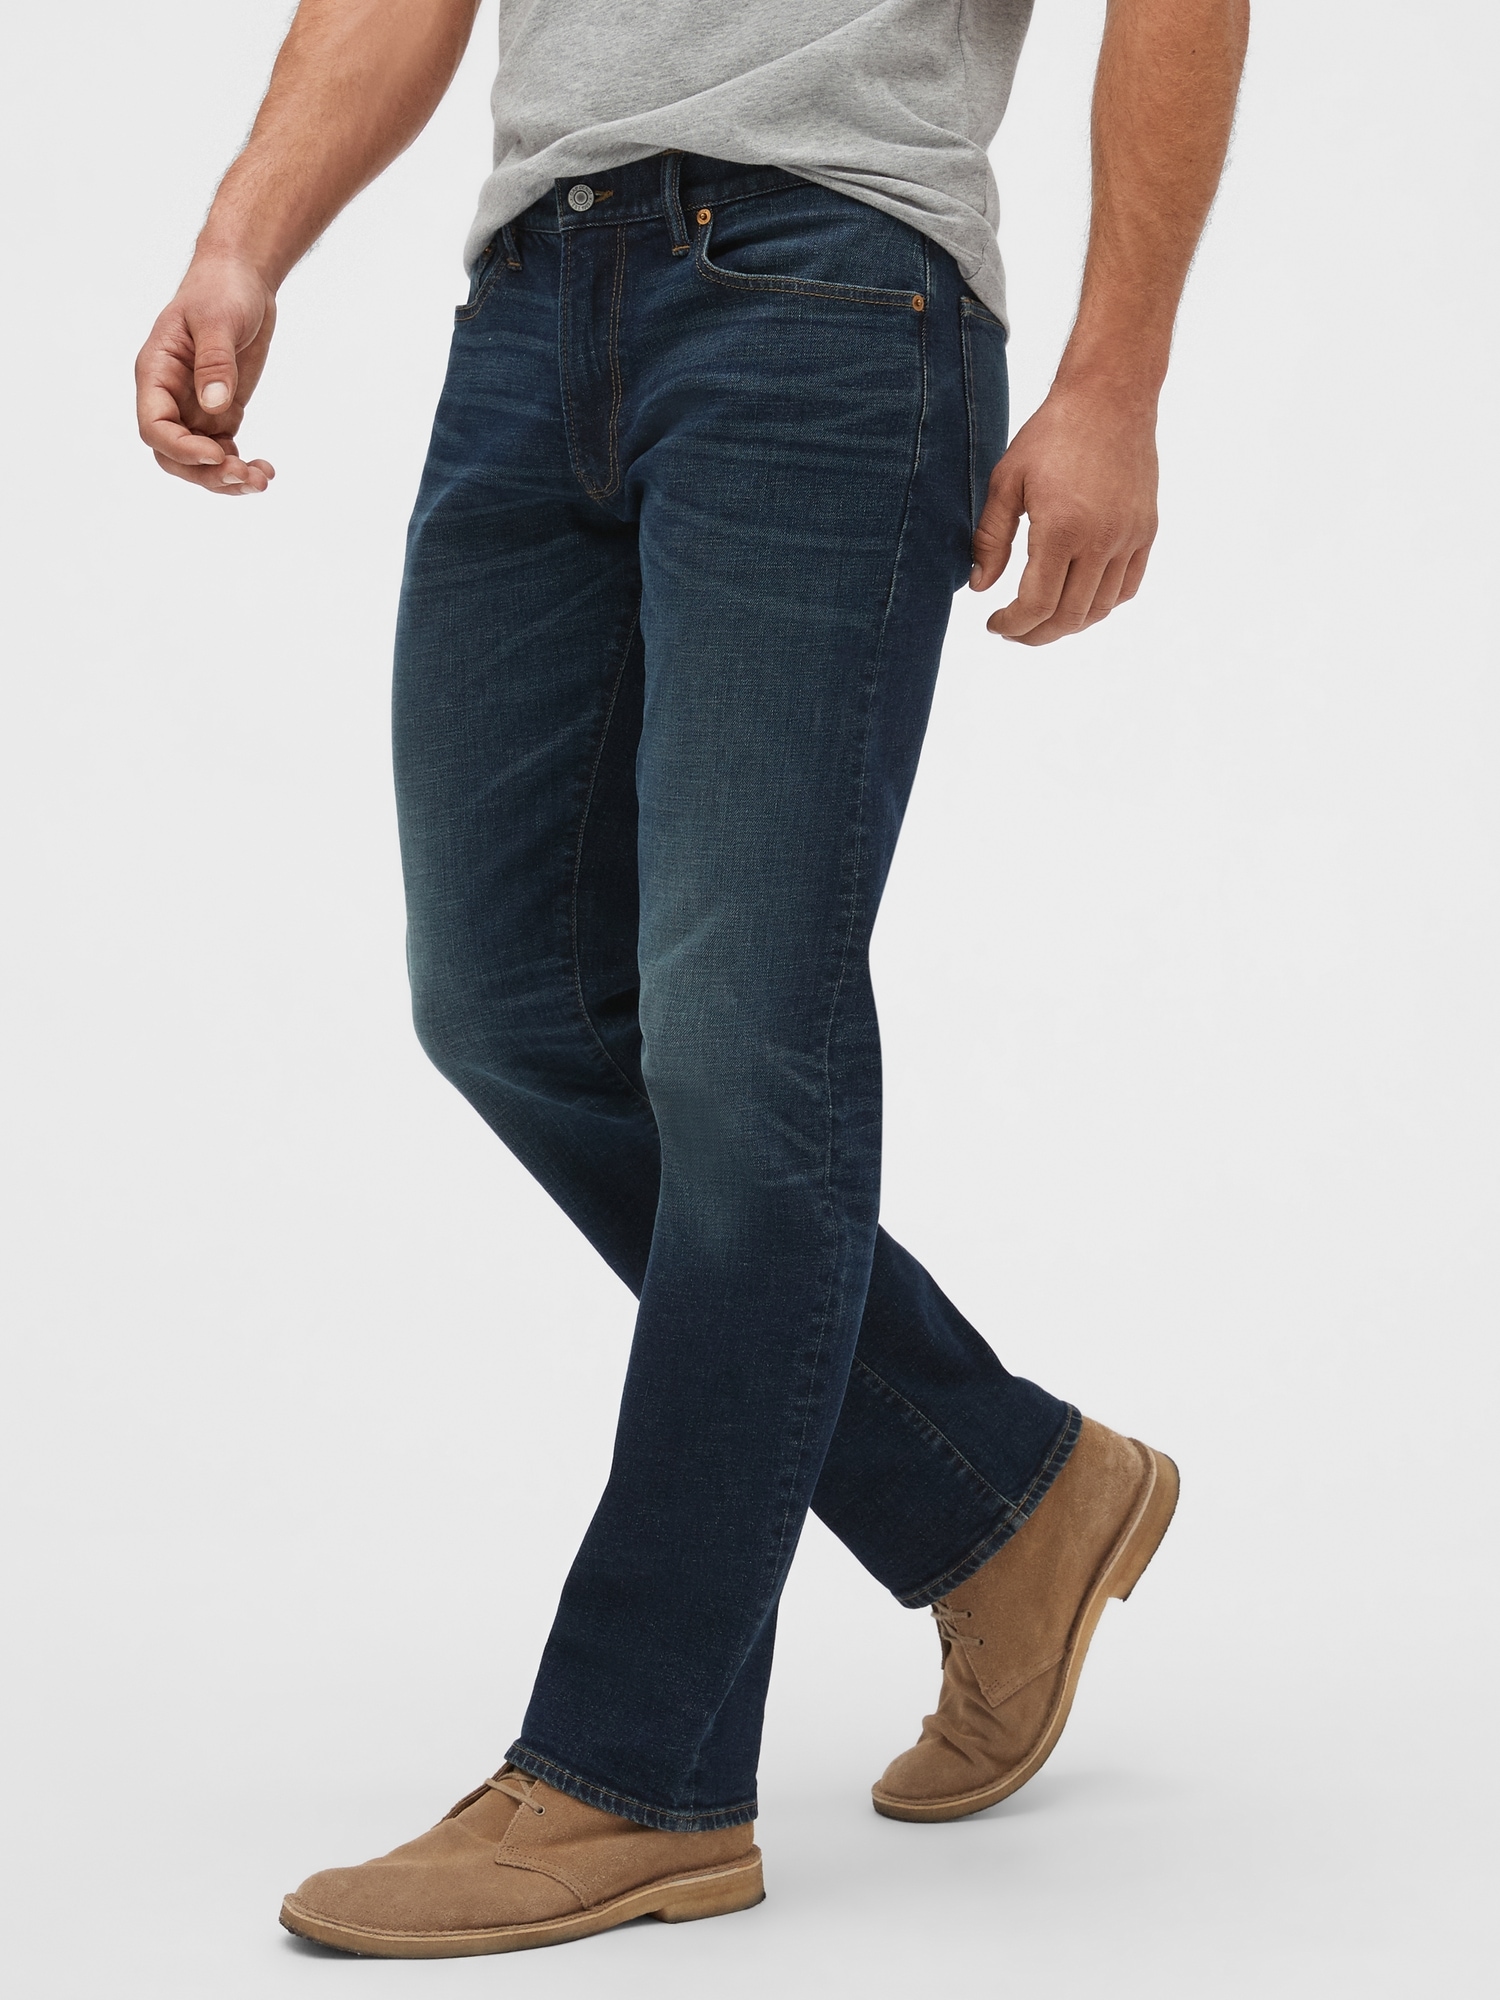 Spor yap Onur Bu gece  Straight Gapflex Jeans with Washwell™ | Gap Factory